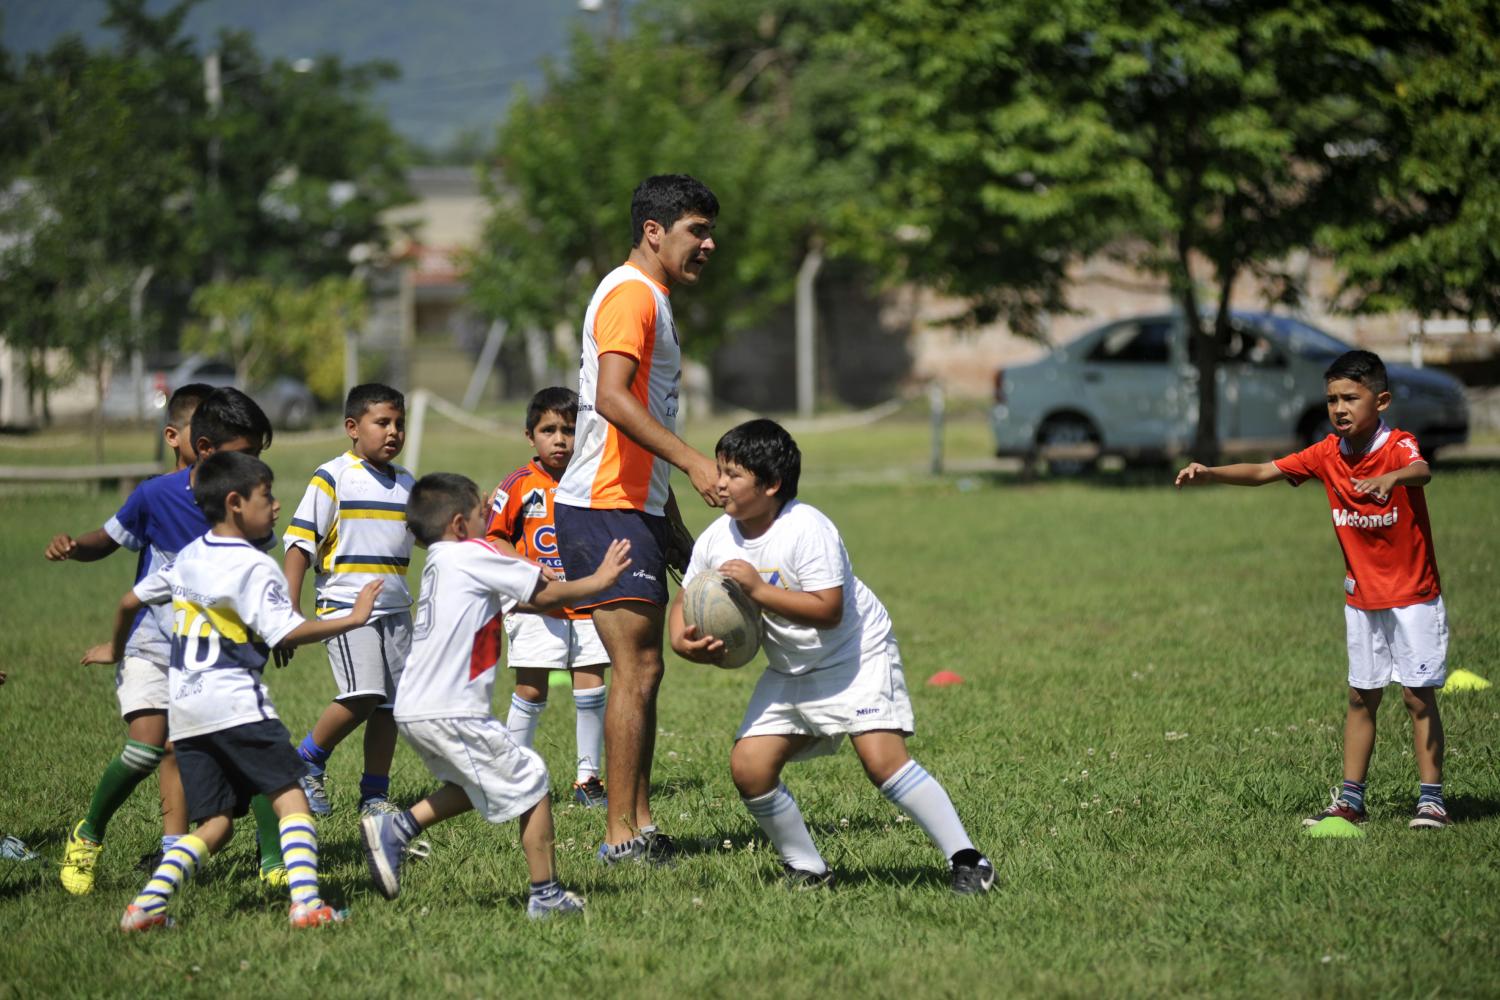 Recomendaciones para estimular los deportes en las infancias